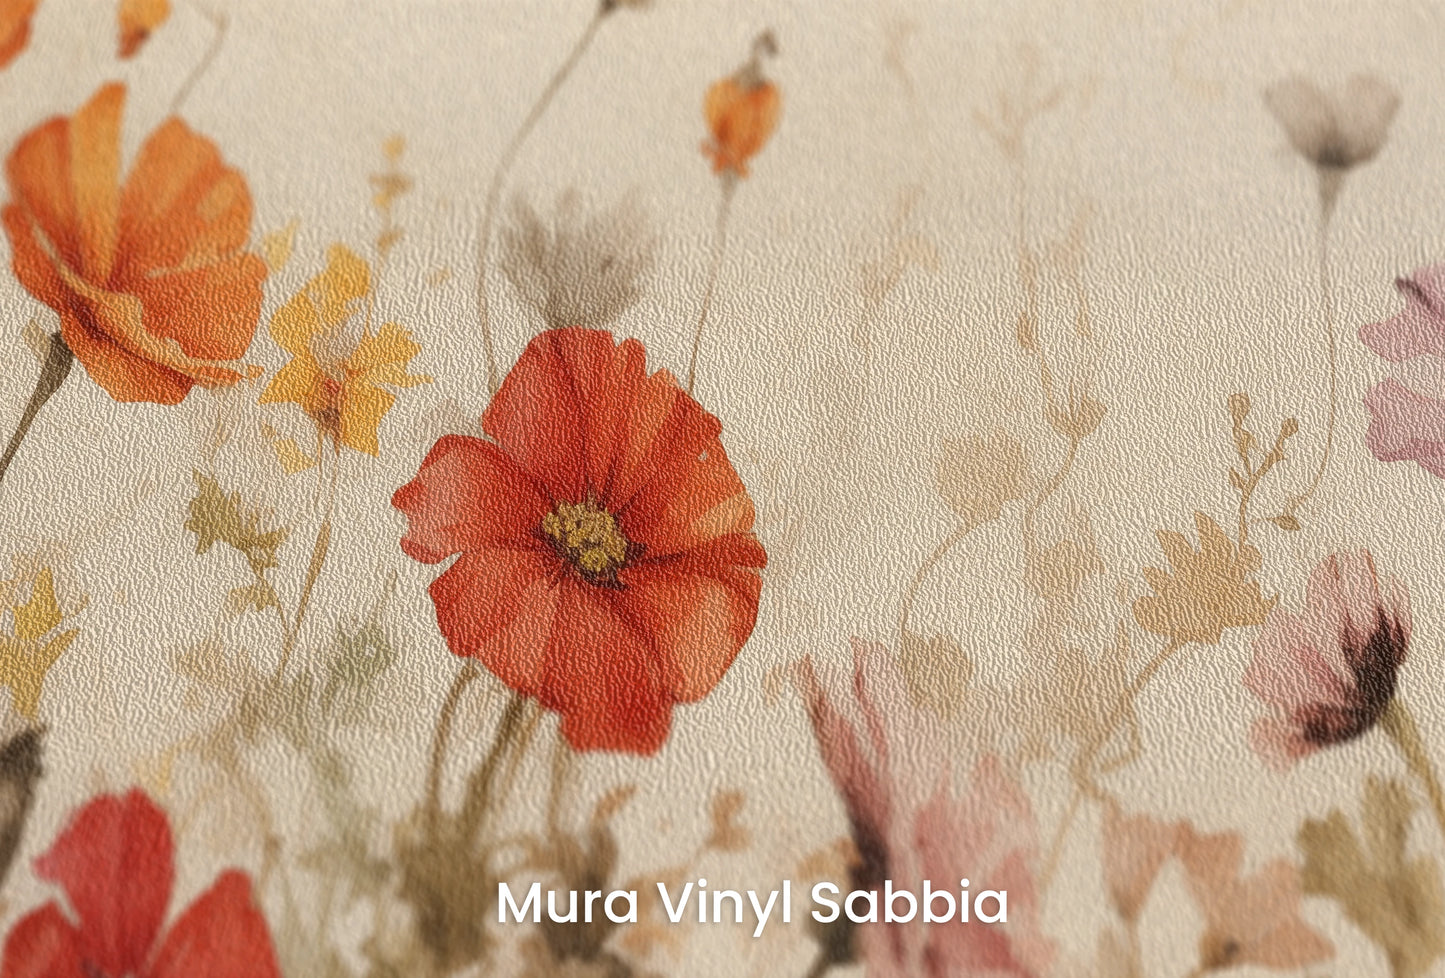 Zbliżenie na artystyczną fototapetę o nazwie Field of Poppies na podłożu Mura Vinyl Sabbia struktura grubego ziarna piasku.